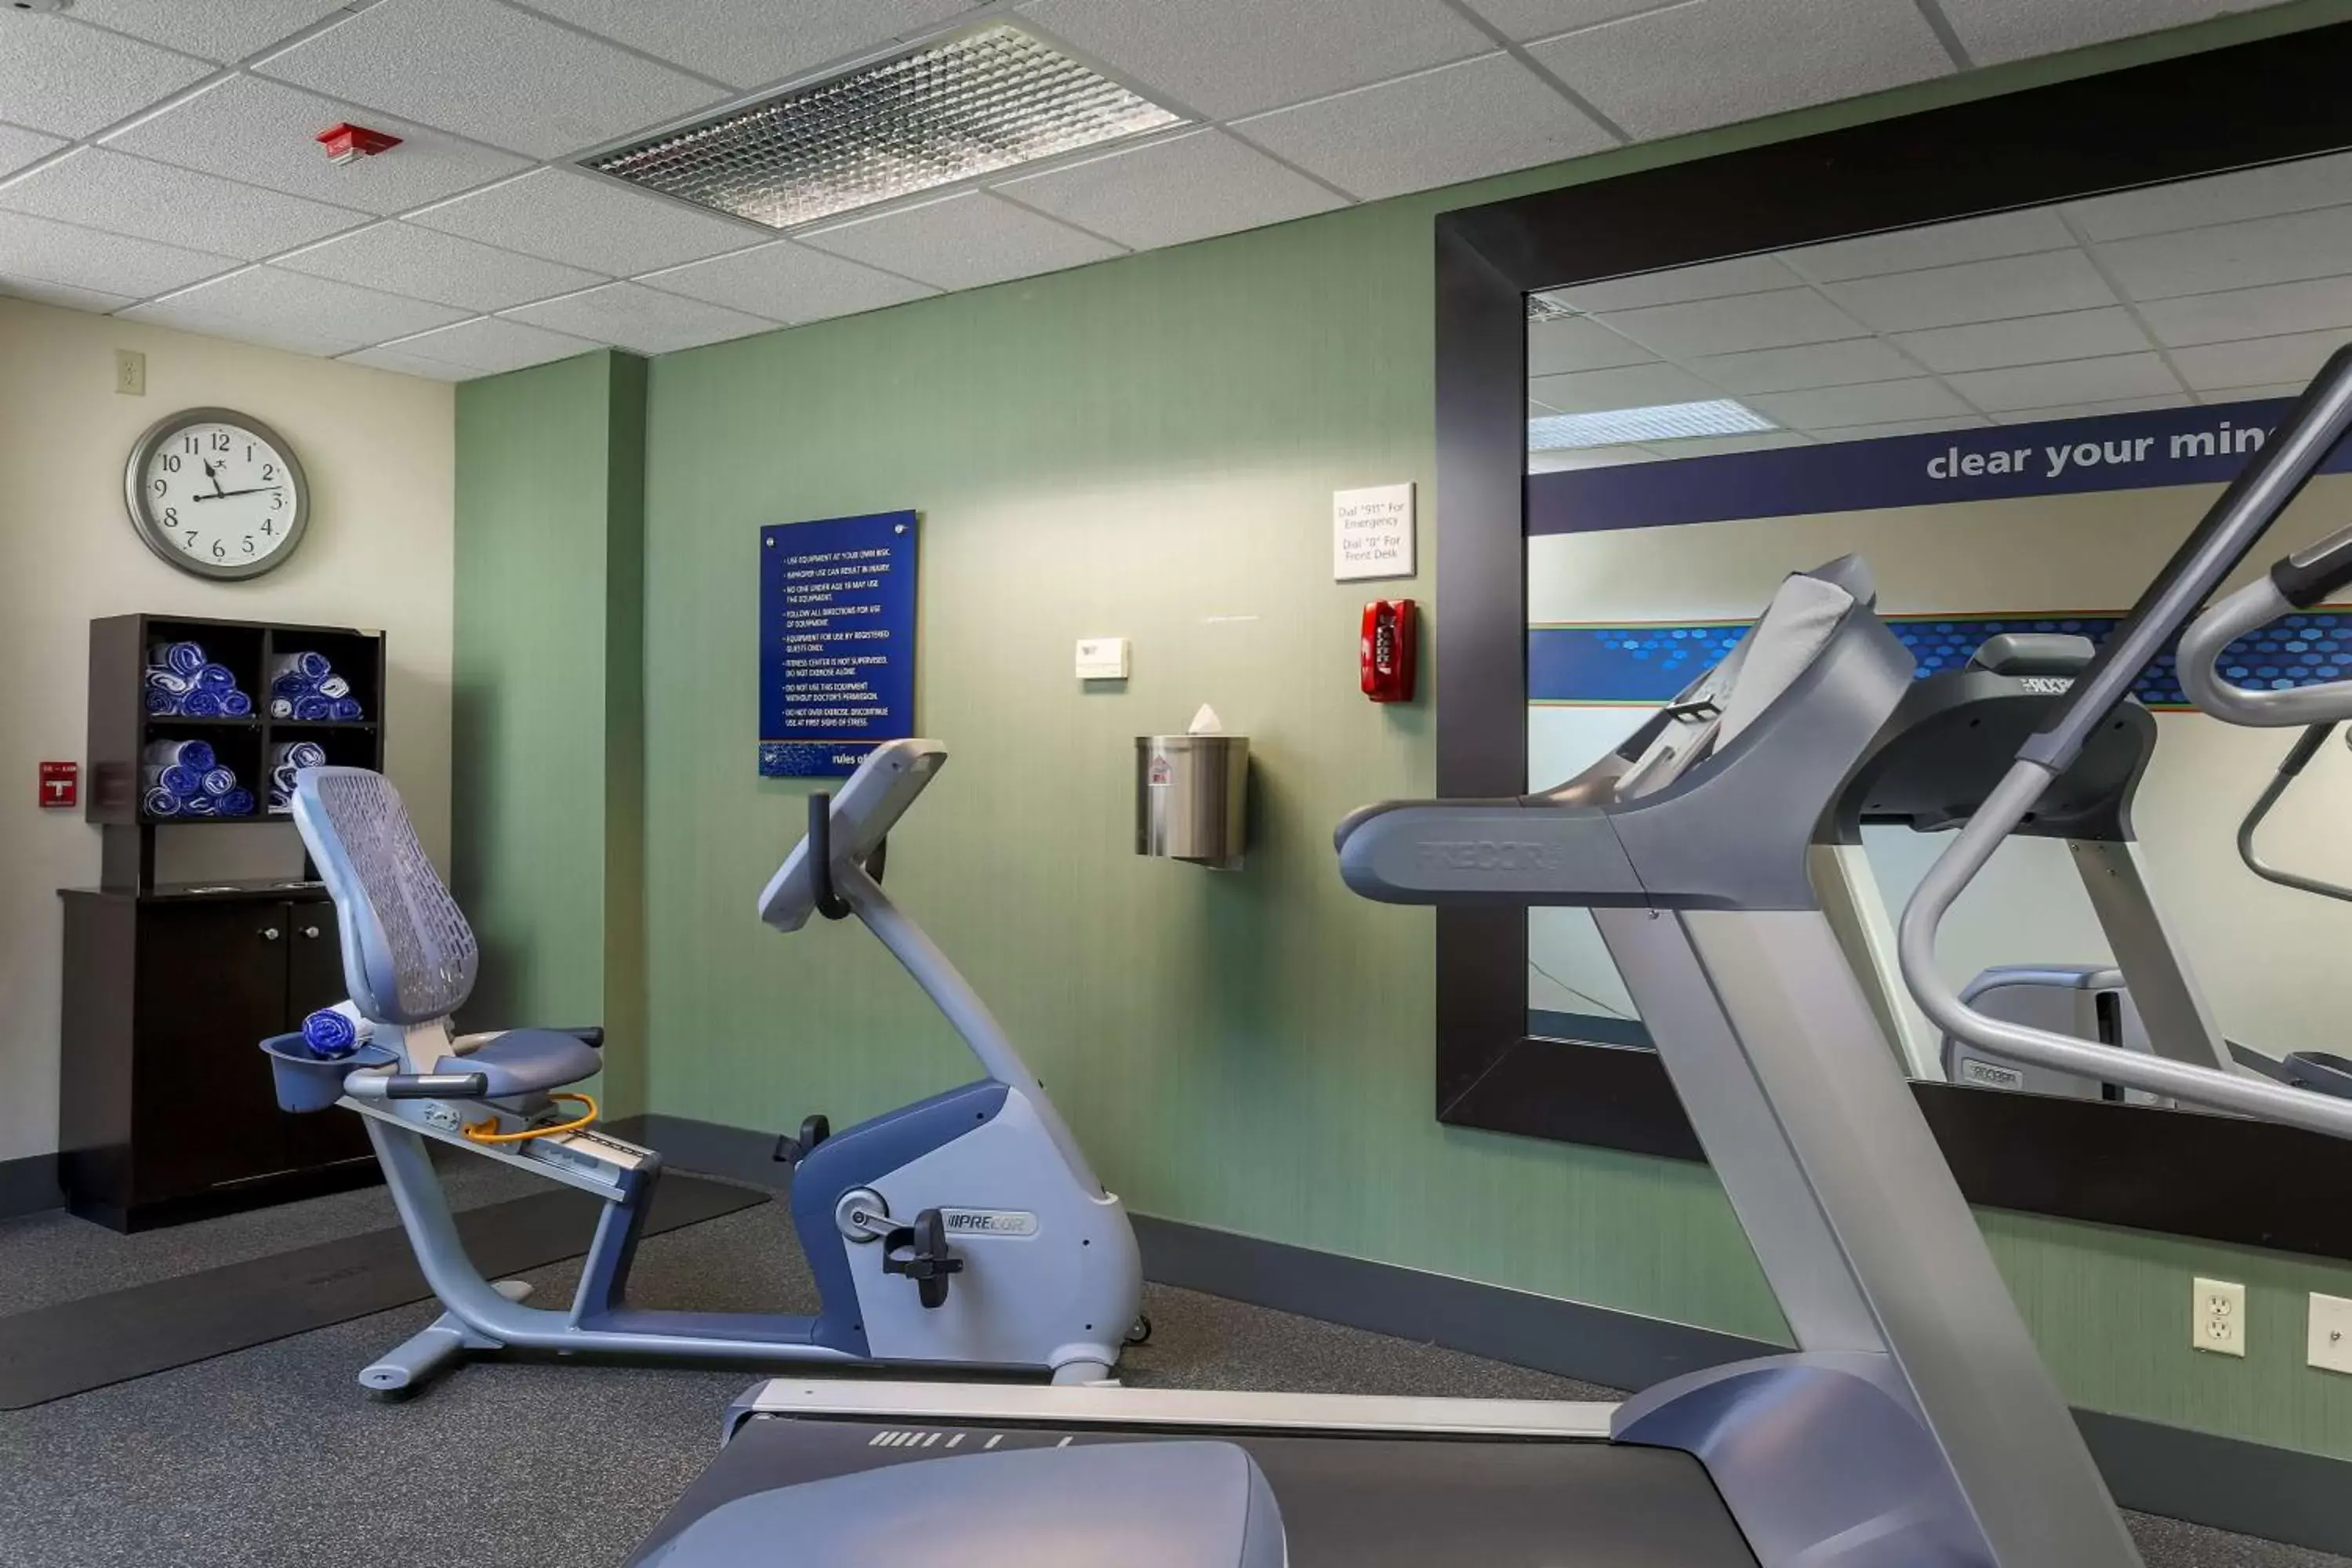 Fitness centre/facilities, Fitness Center/Facilities in Hampton Inn Dayton/Fairborn